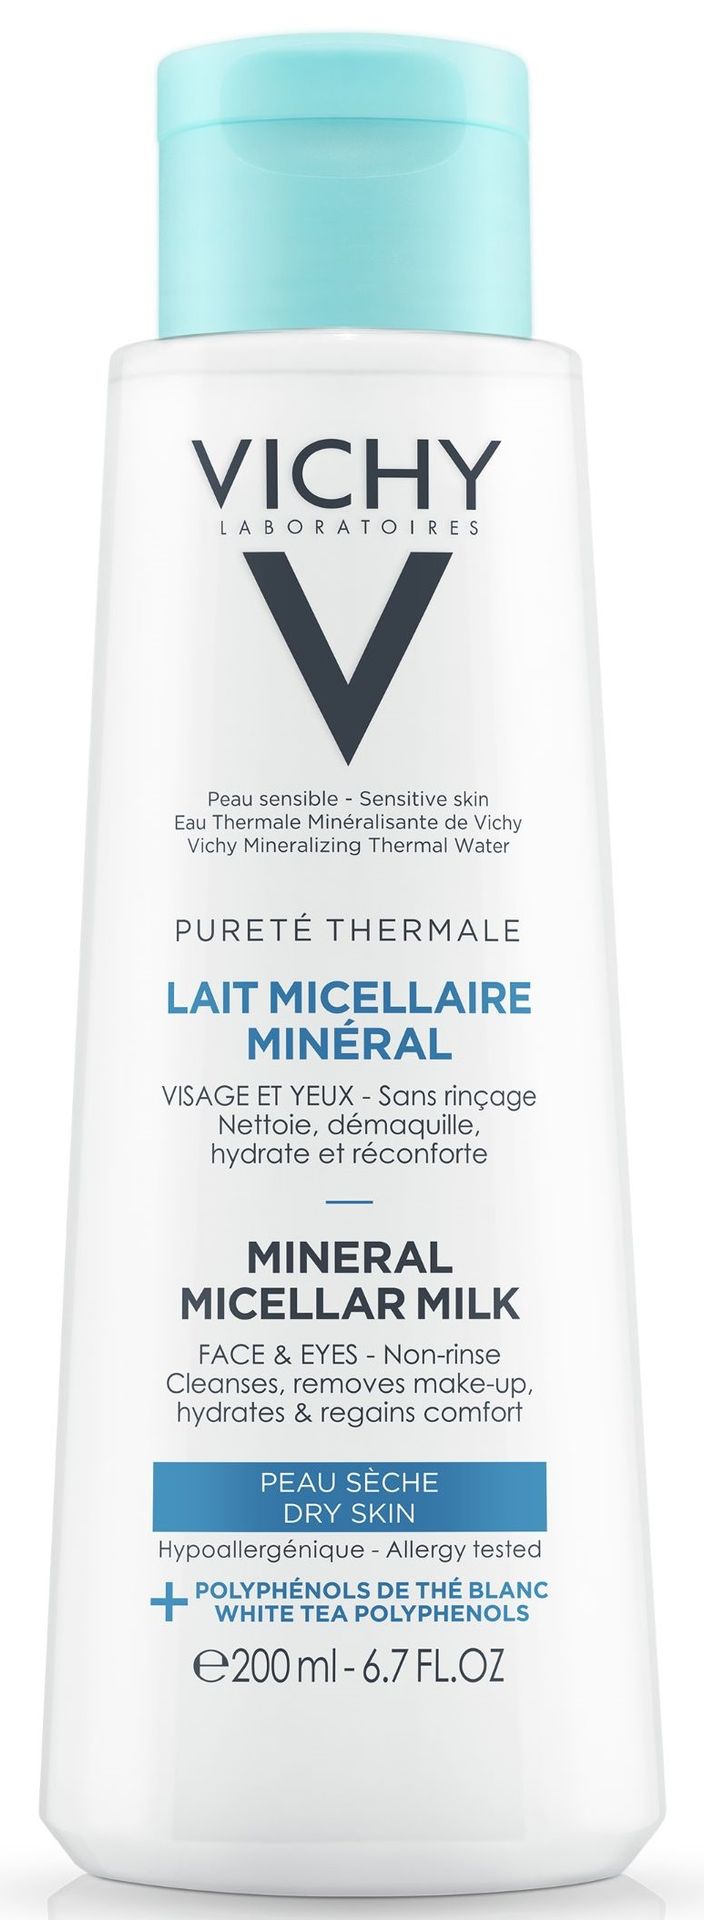 Vichy Pureté Thermale mineralne mleczko micelarne do skóry suchej 200 ml